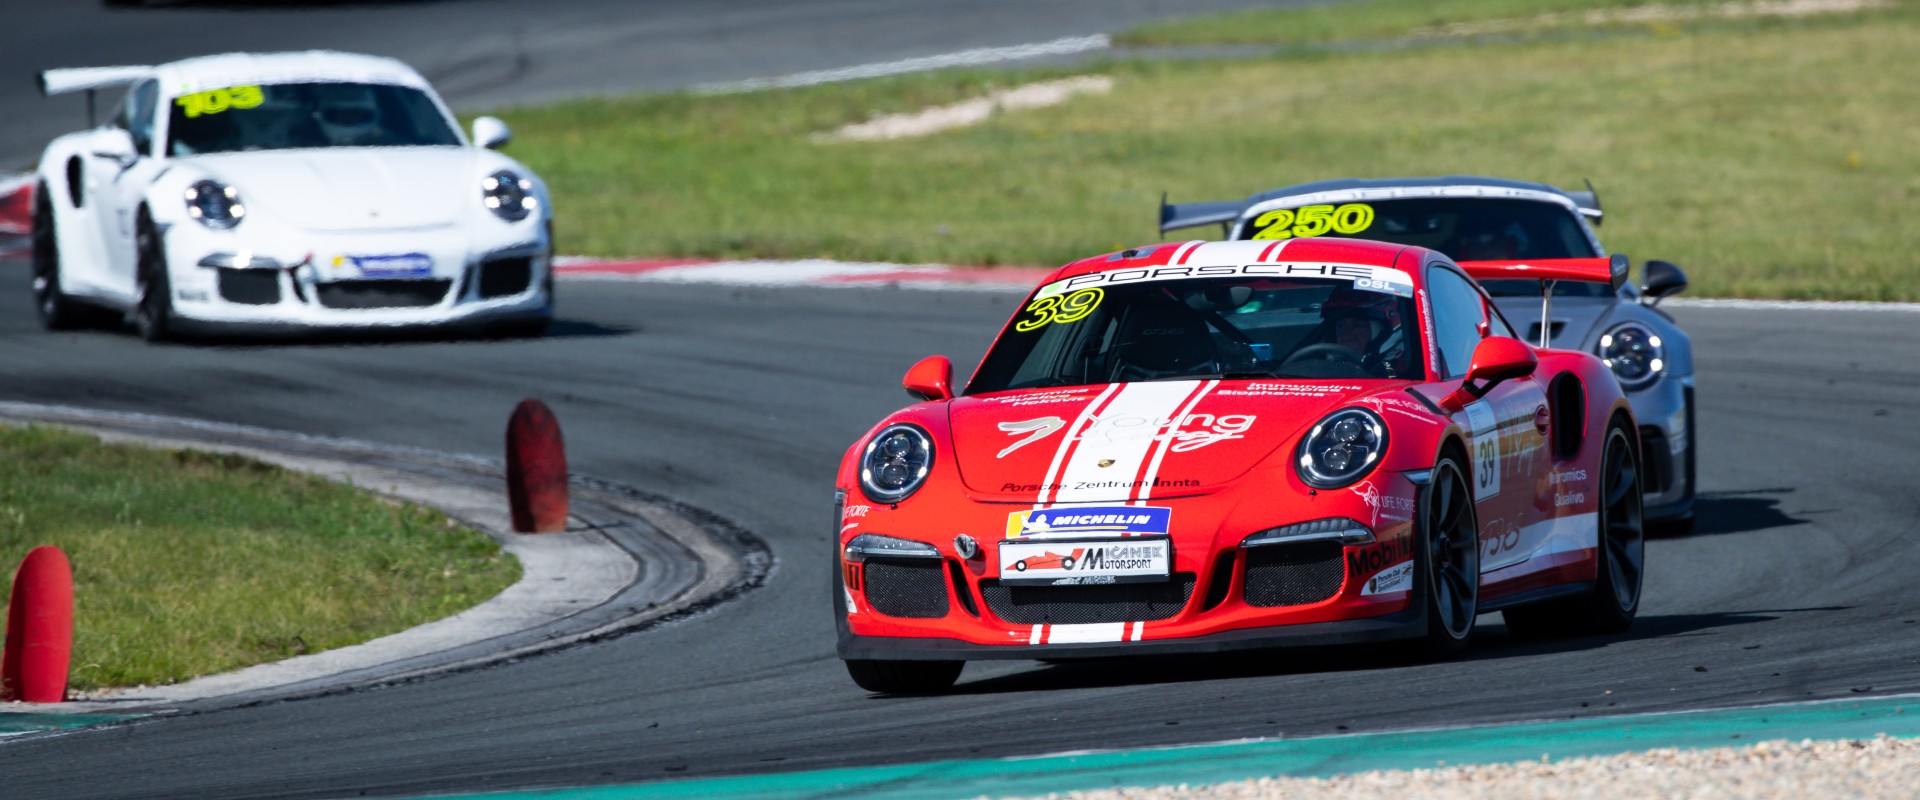 Šmarda si v Oscherslebenu dvěma podii pomohl k celkovému třetímu místu v Porsche Sports Cup Deutschland